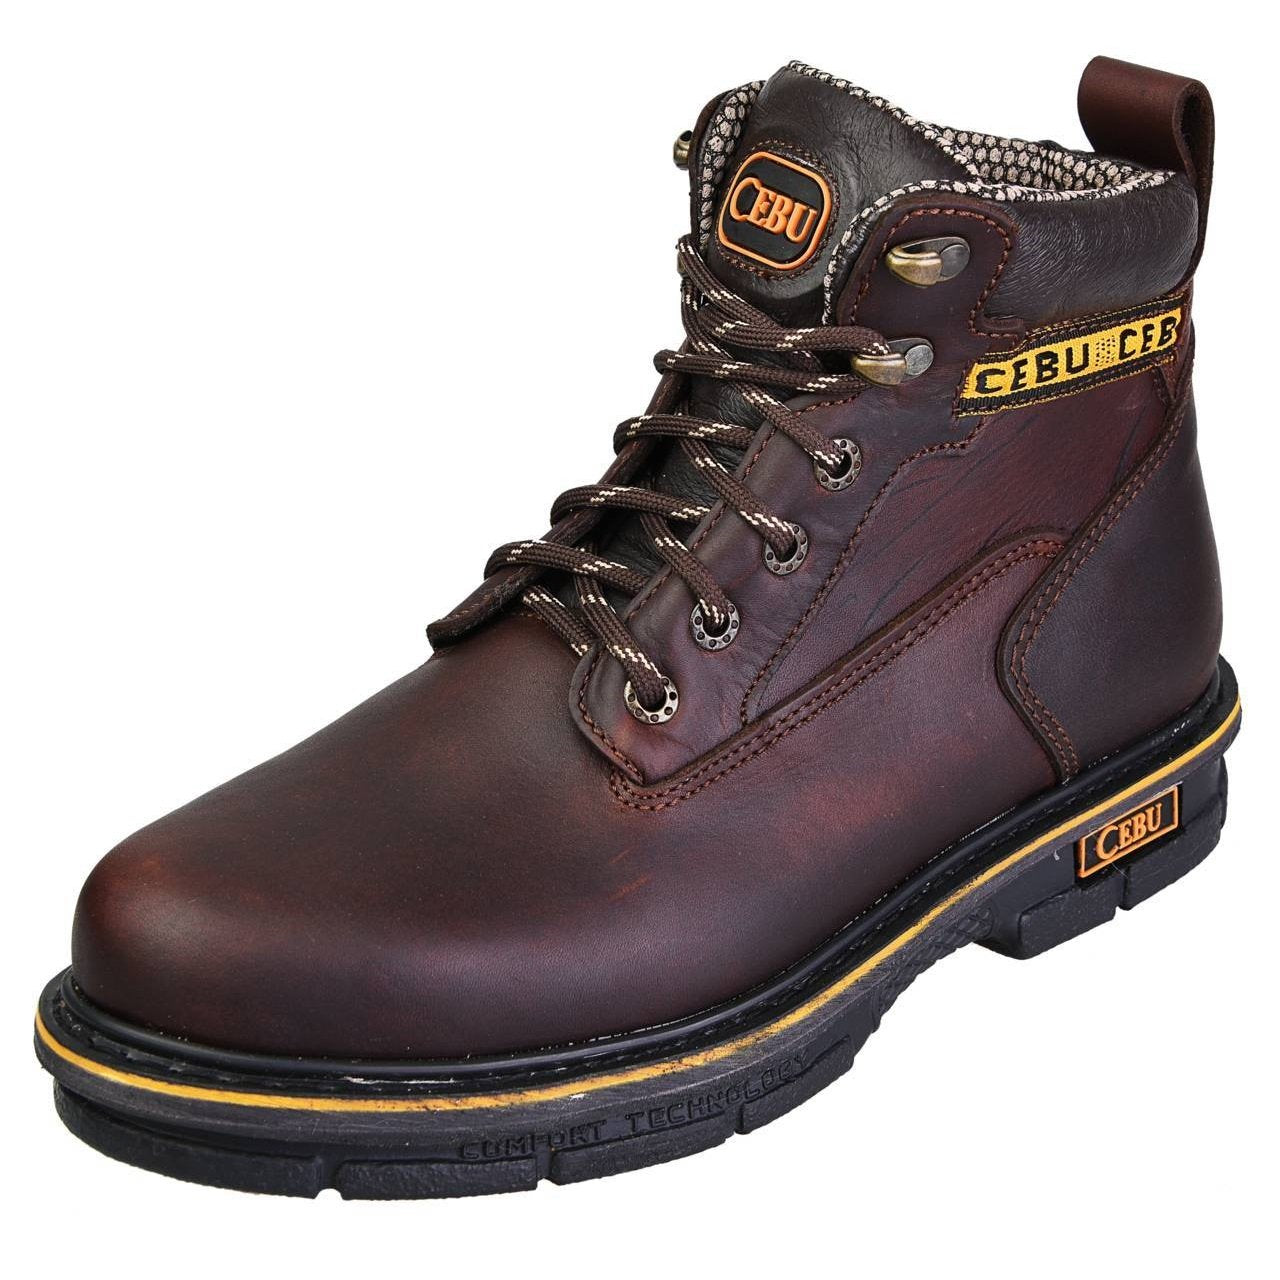 Men's Work Boots - Versatile - Brown Work Boots - Cebu - 6" Work Boots - Brown 6in Work Boots